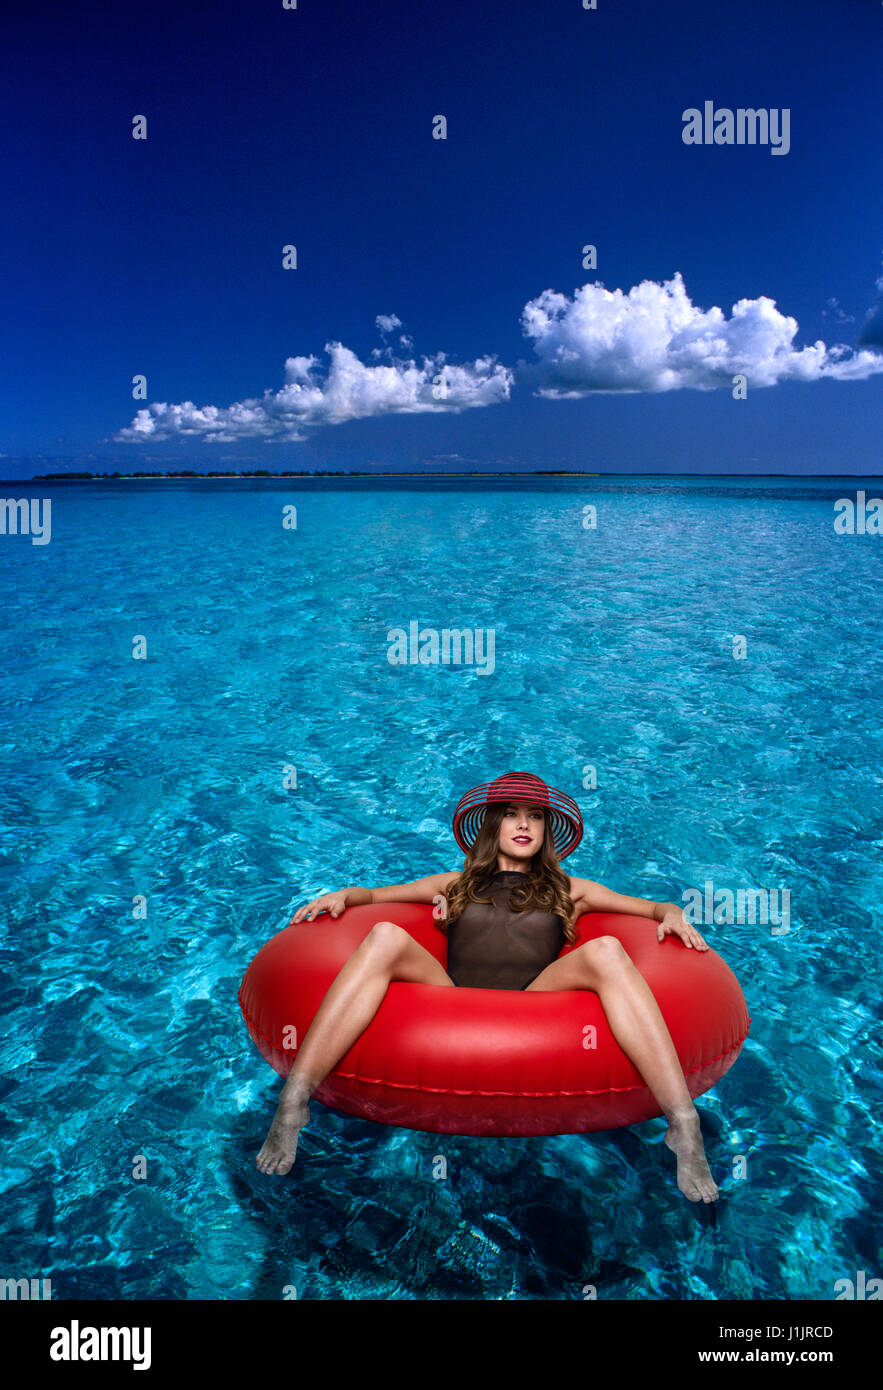 Mujer joven flotando en un tubo interior Foto de stock